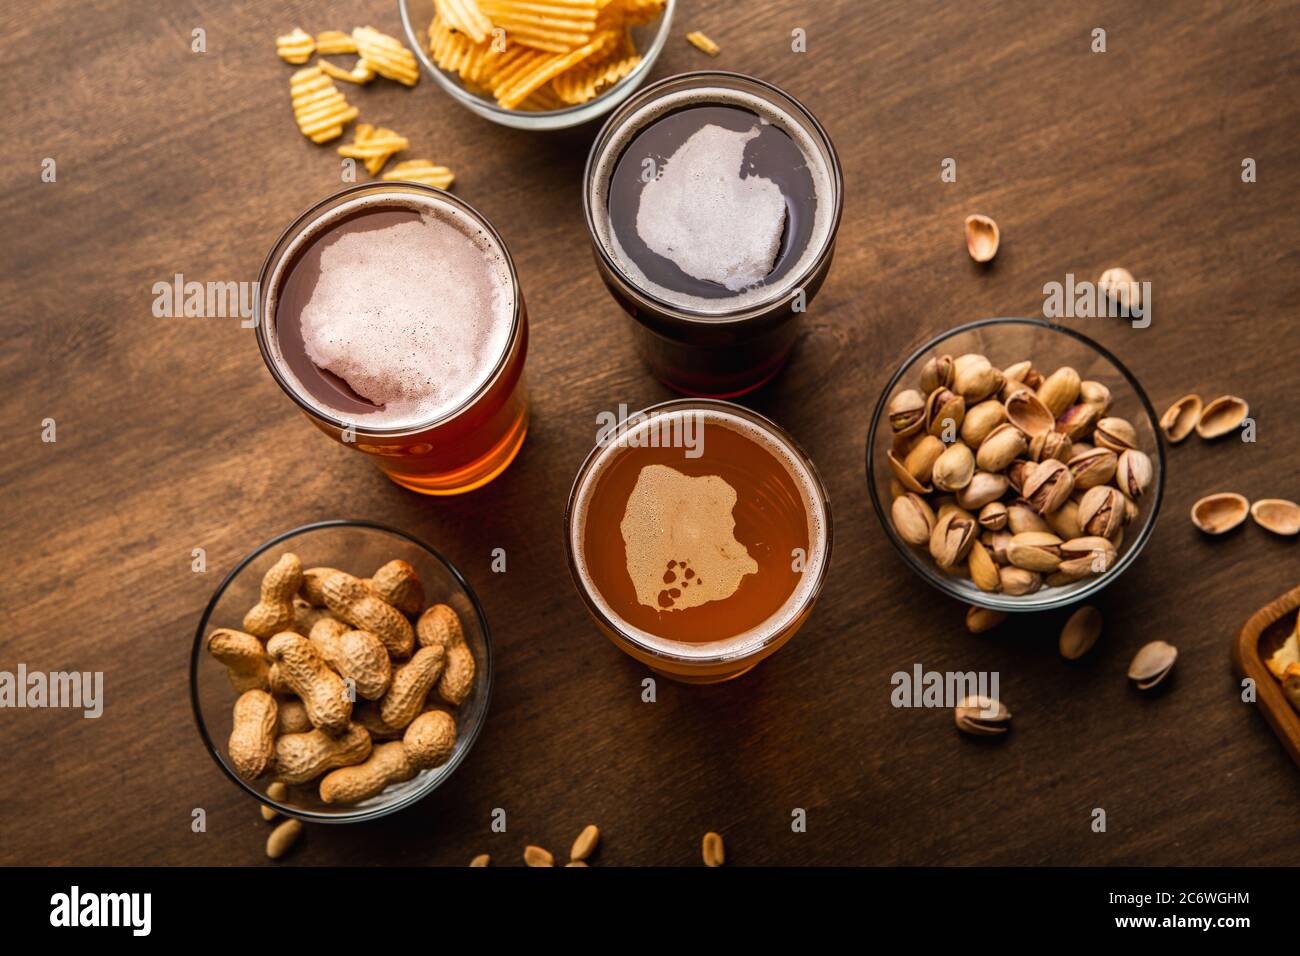 Dunkles, helles, ungefiltertes Bier im Glas auf Holztisch mit Snacks auf Tellern Stockfoto